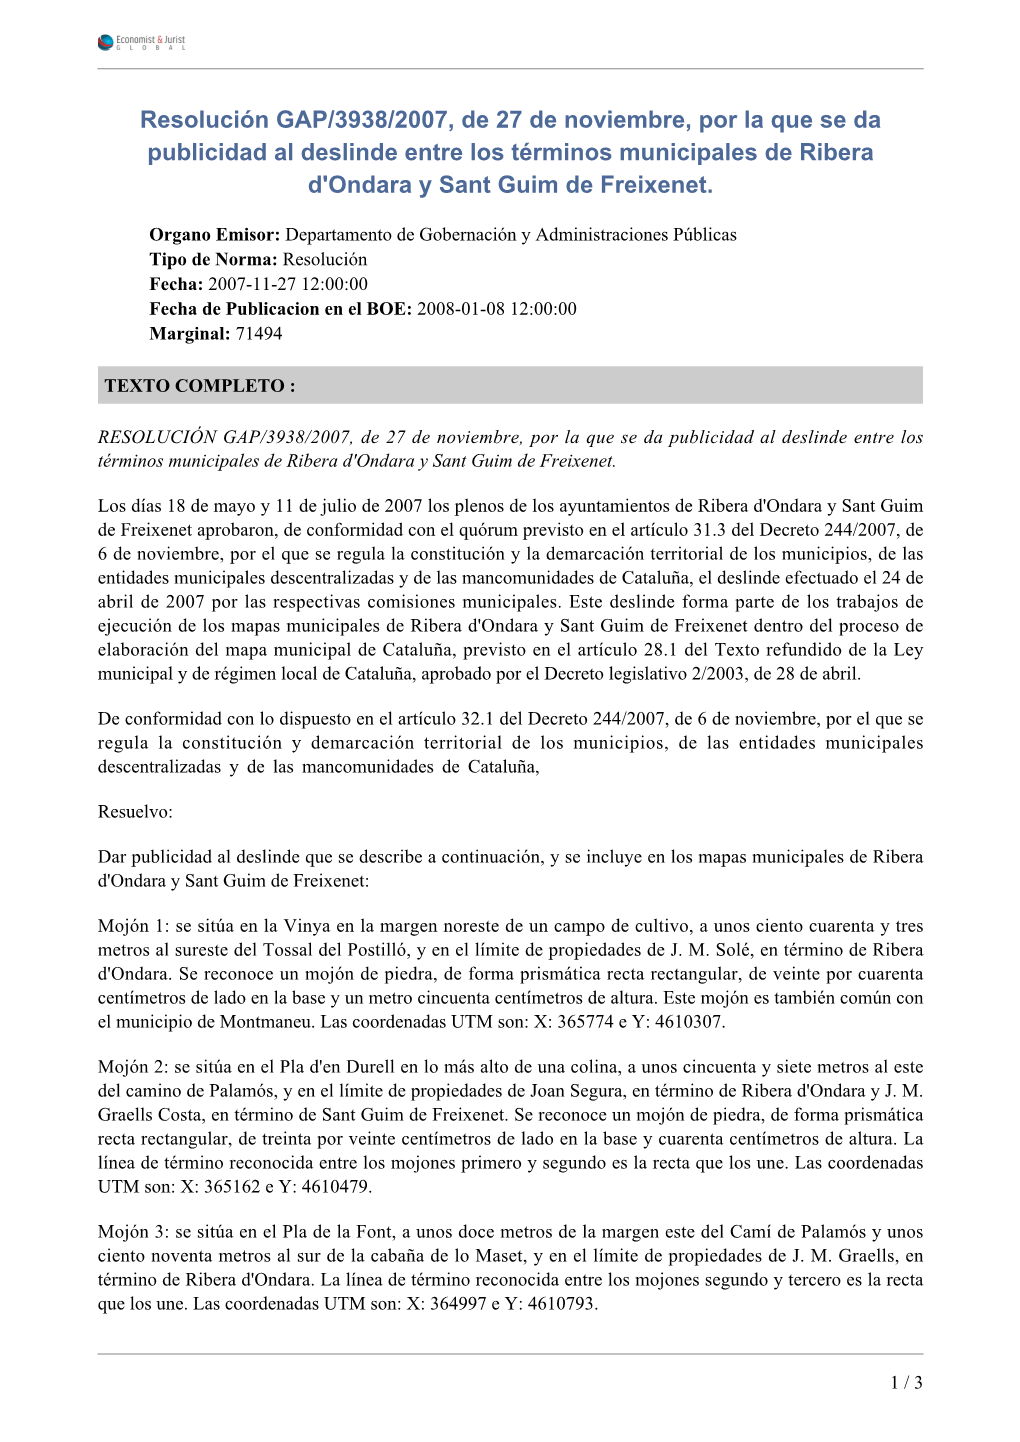 Resolución GAP/3938/2007, De 27 De Noviembre, Por La Que Se Da Publicidad Al Deslinde Entre Los Términos Municipales De Ribera D'ondara Y Sant Guim De Freixenet